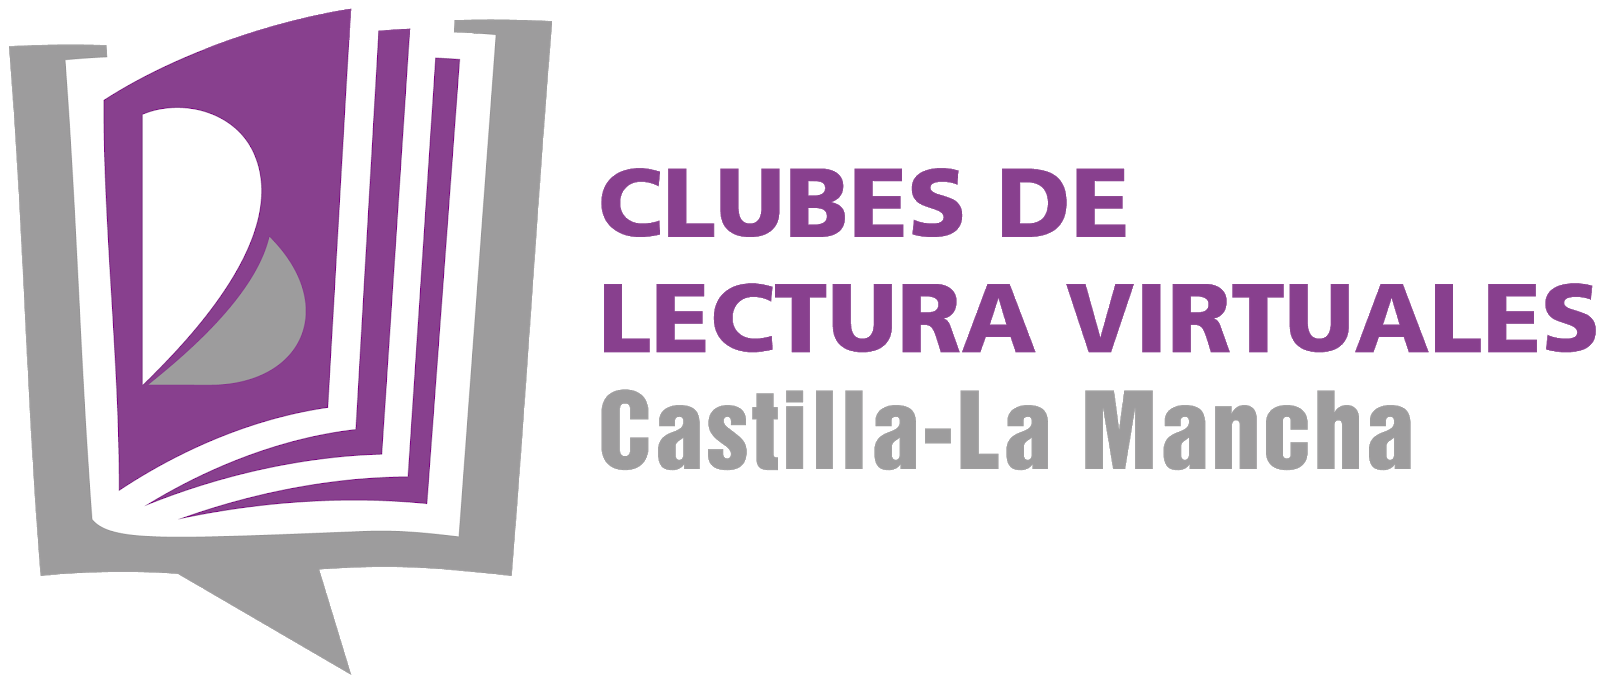 CLUBES DE LECTURA VIRTUALES EN CASTILLA LA MANCHA